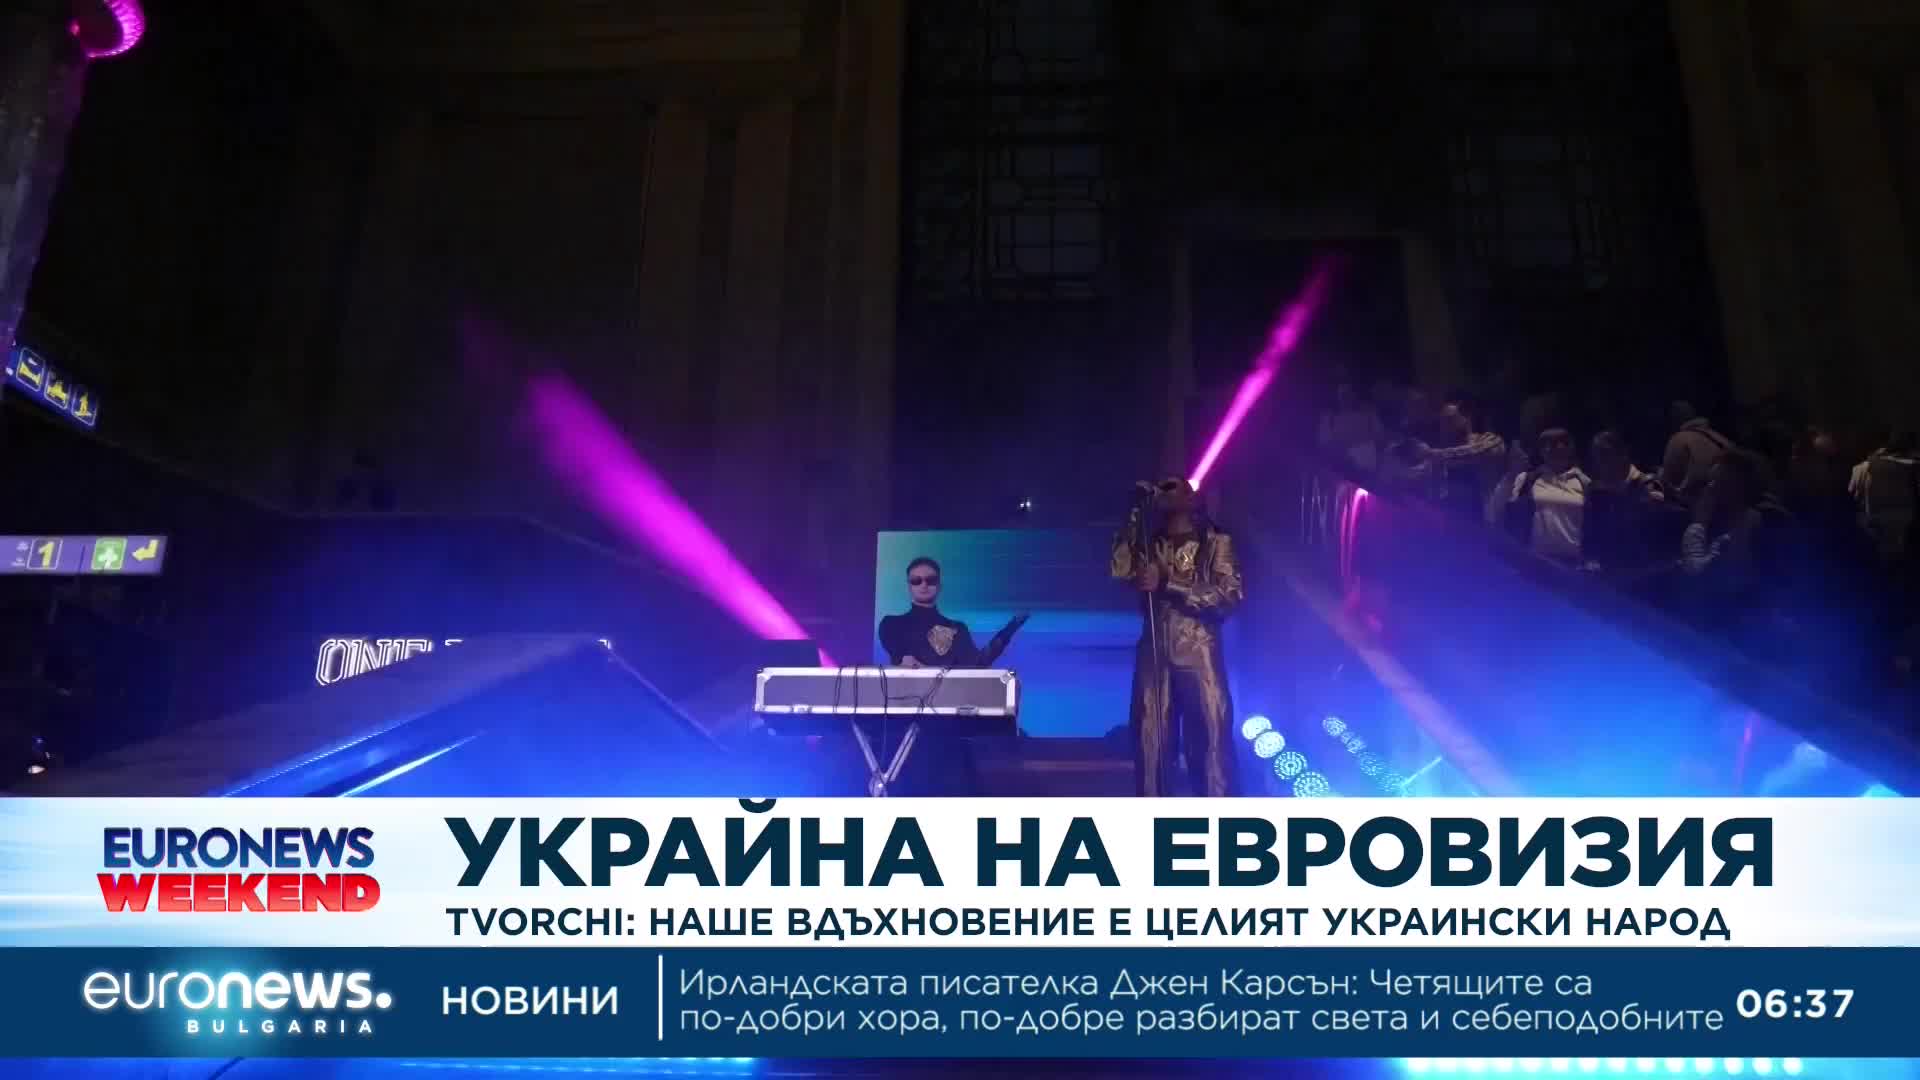 Представителите на Украйна в Евровизия 2023: Целим да покажем силата и куража на украинския народ